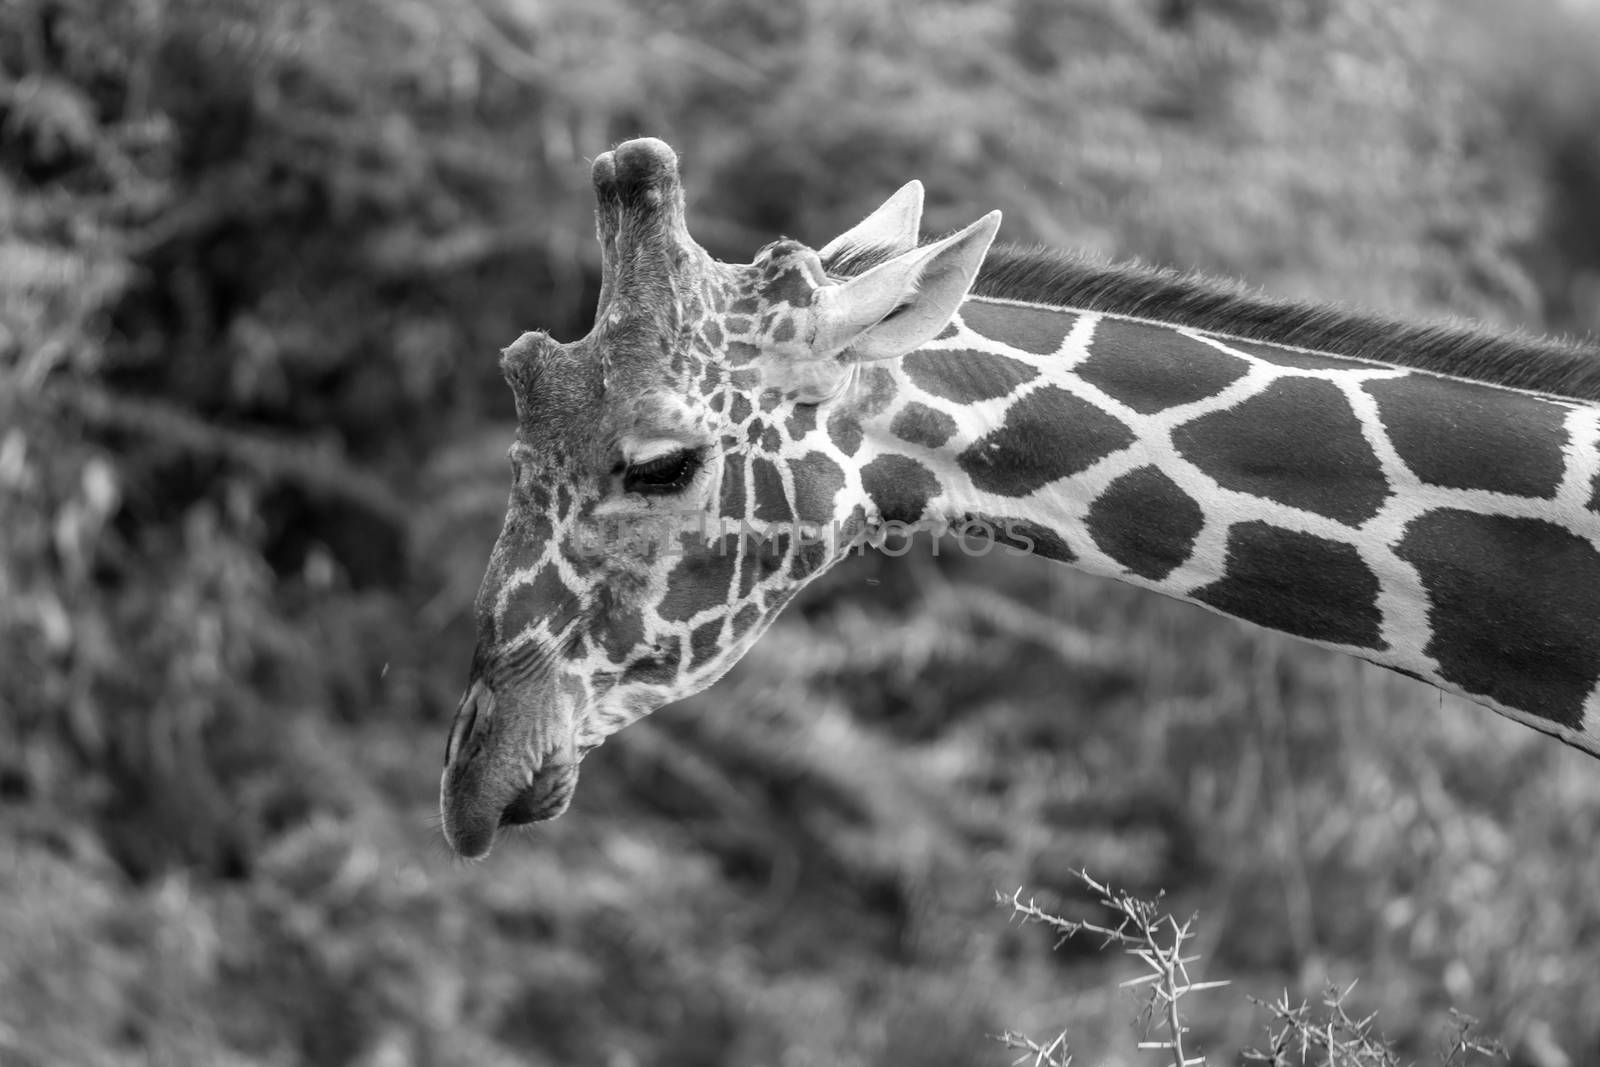 A face of a giraffe in close-up